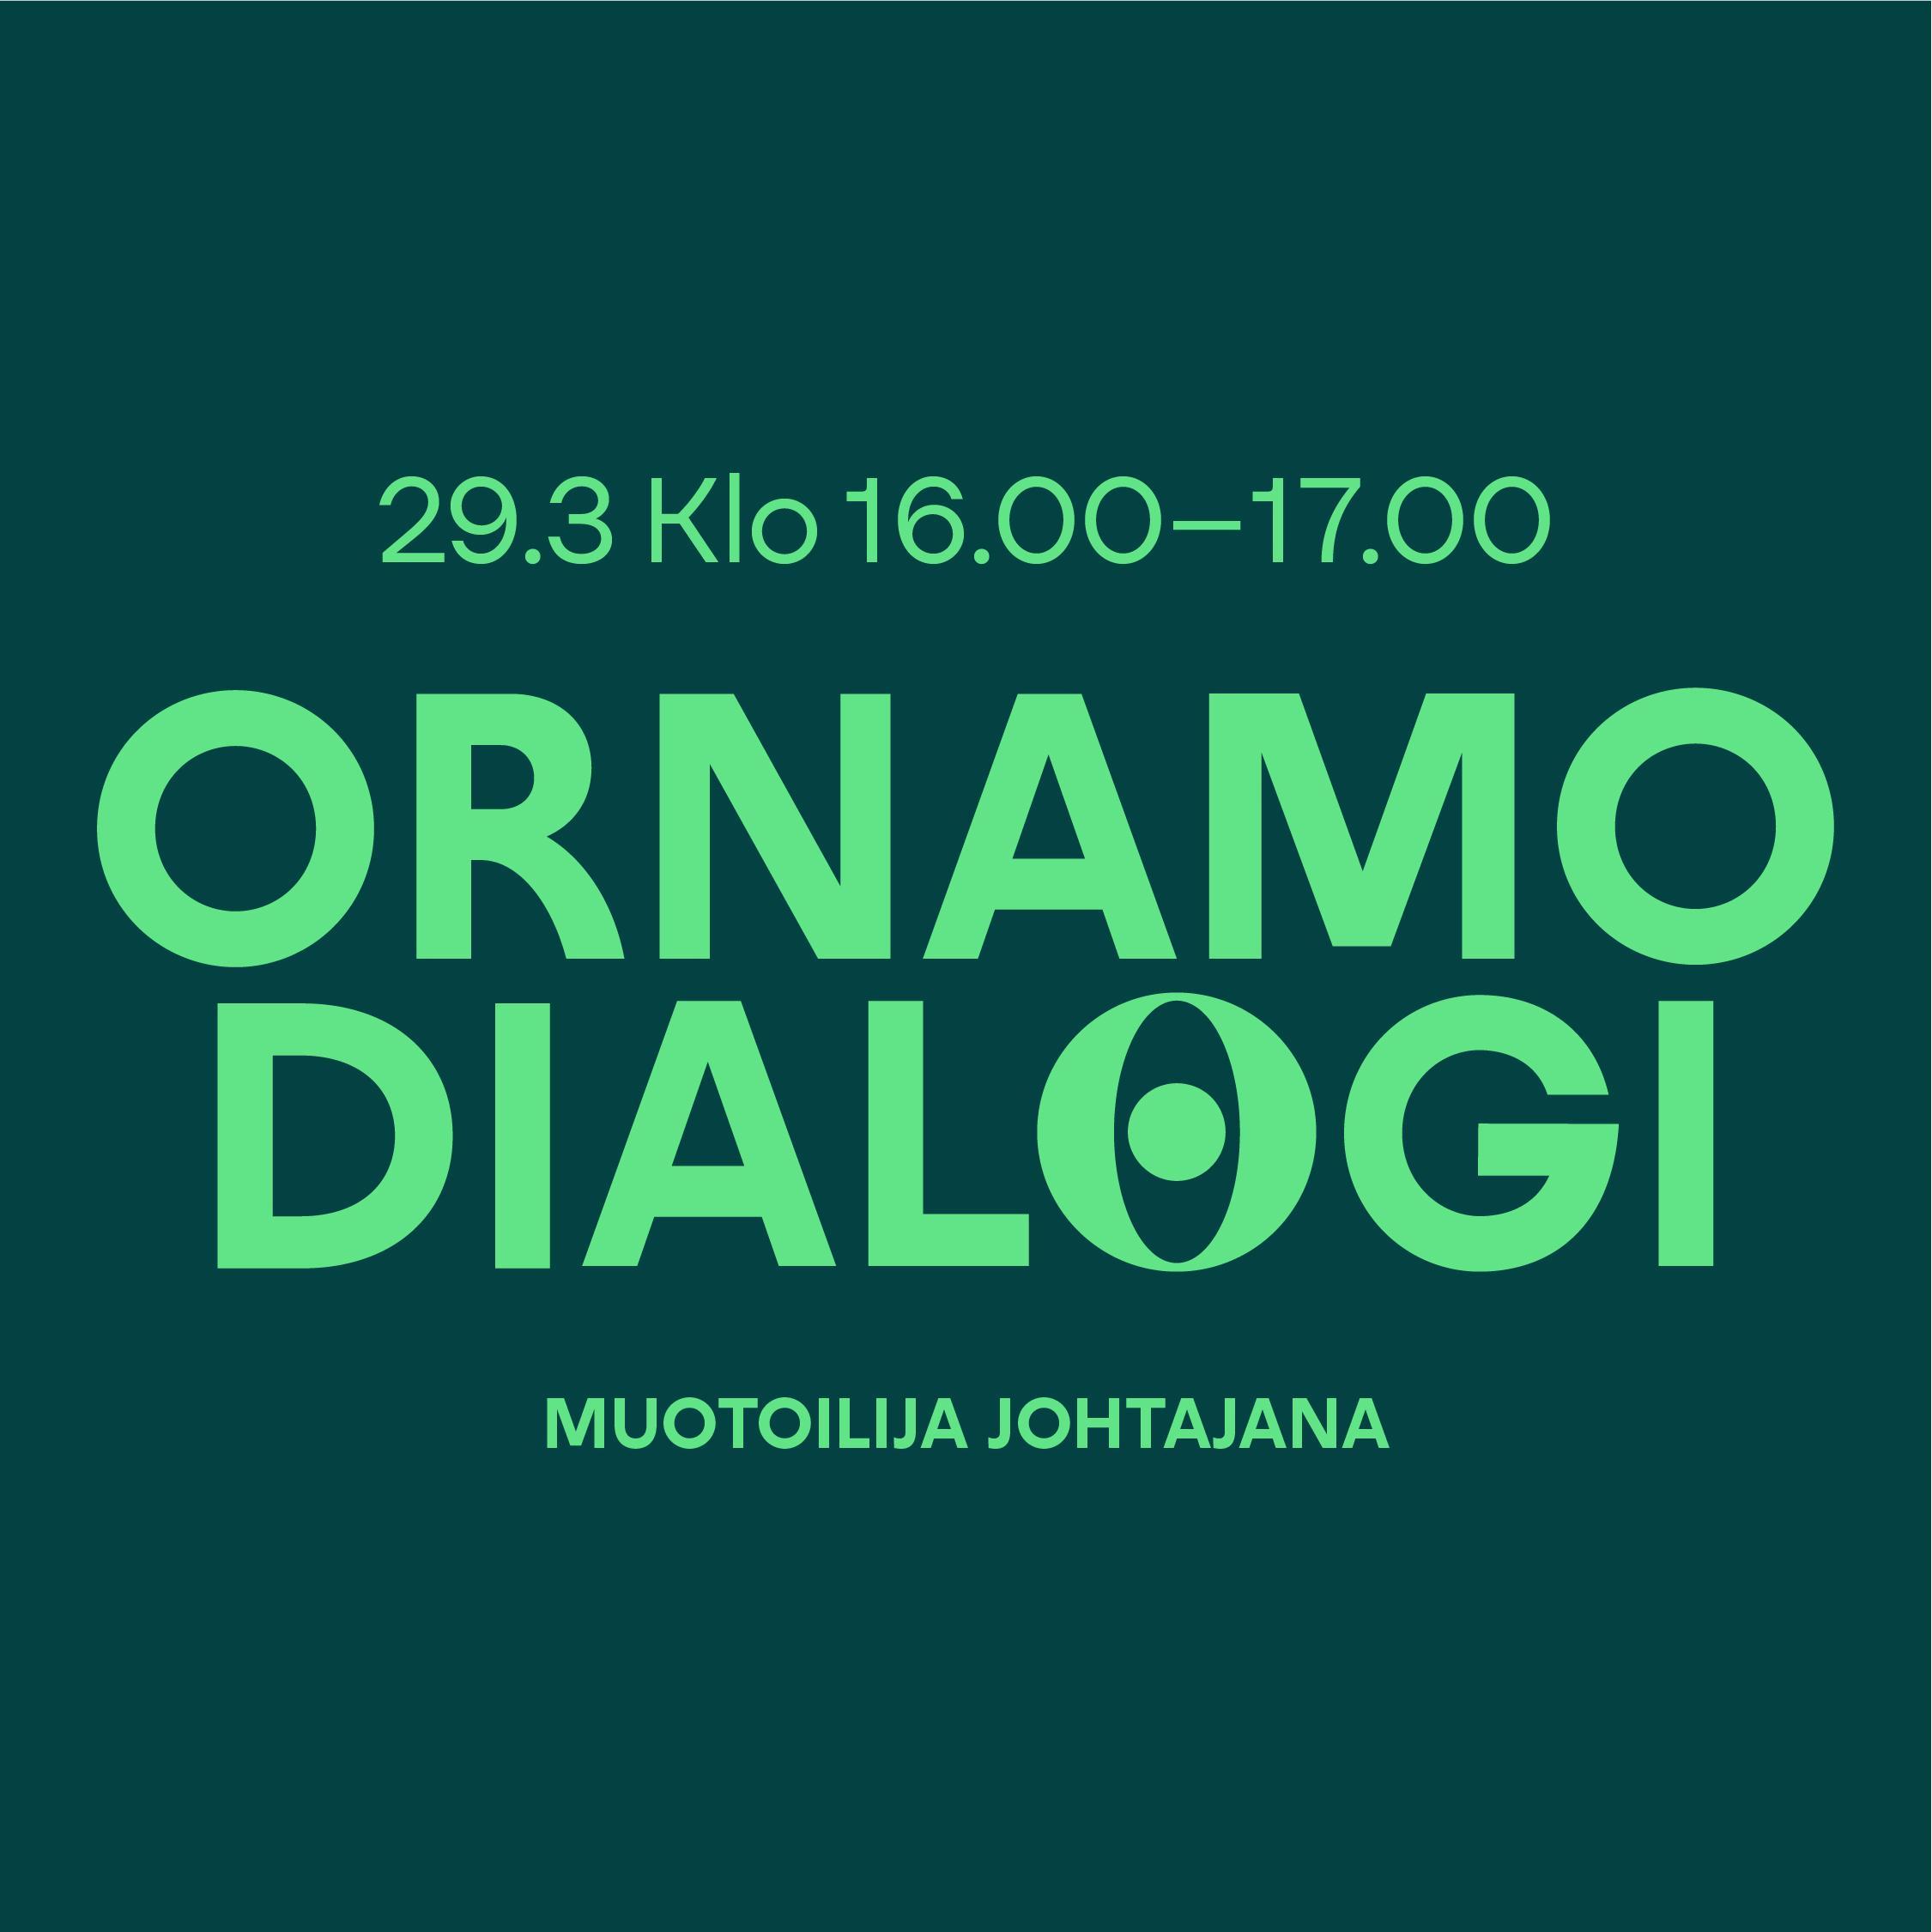 Ornamo Dialogi: Muotoilija johtajana